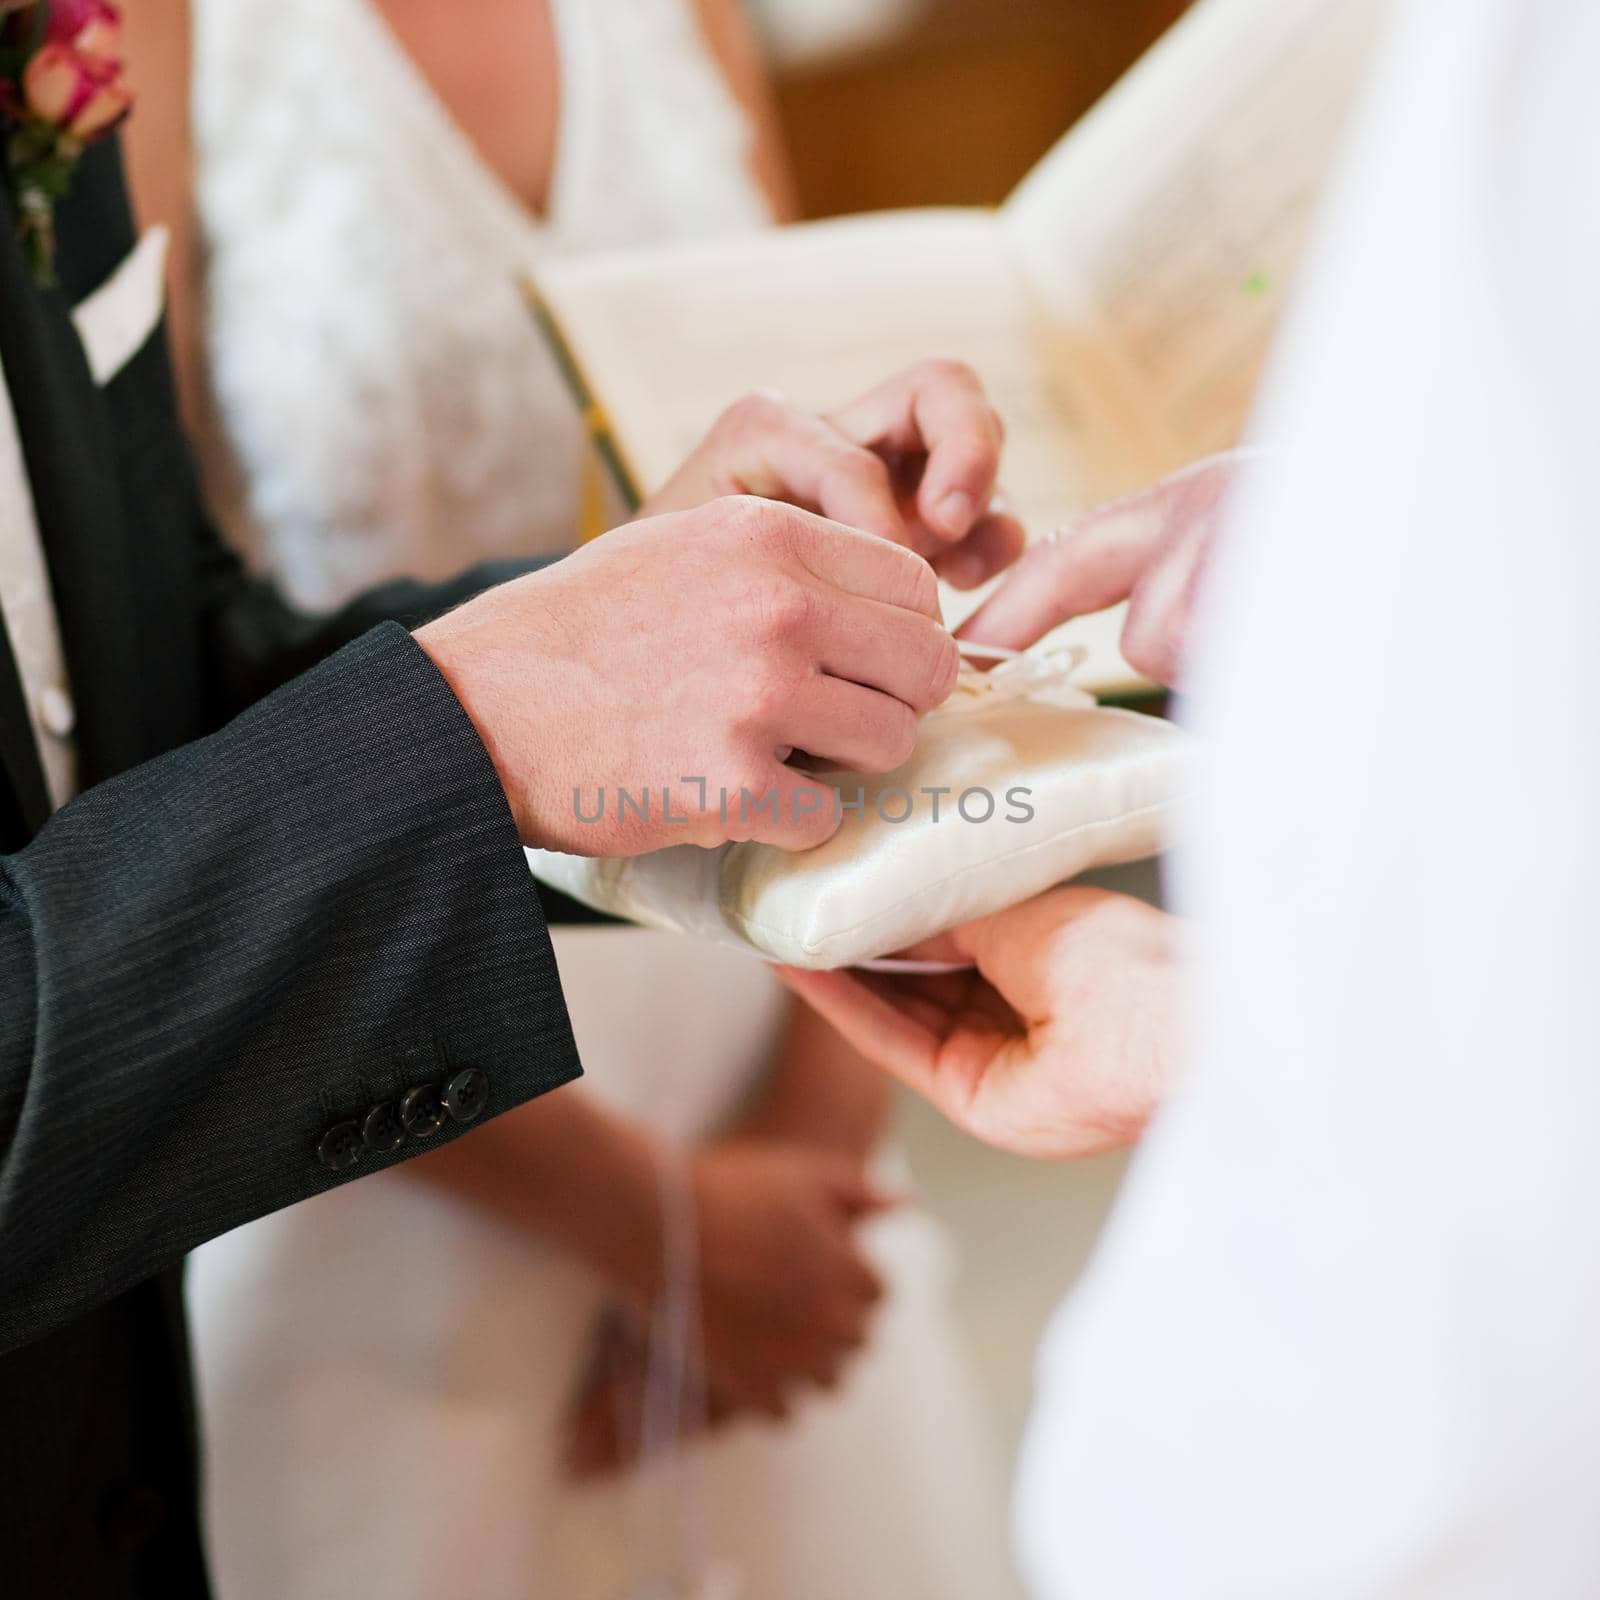 Groom taking rings in wedding ceremony by Kzenon